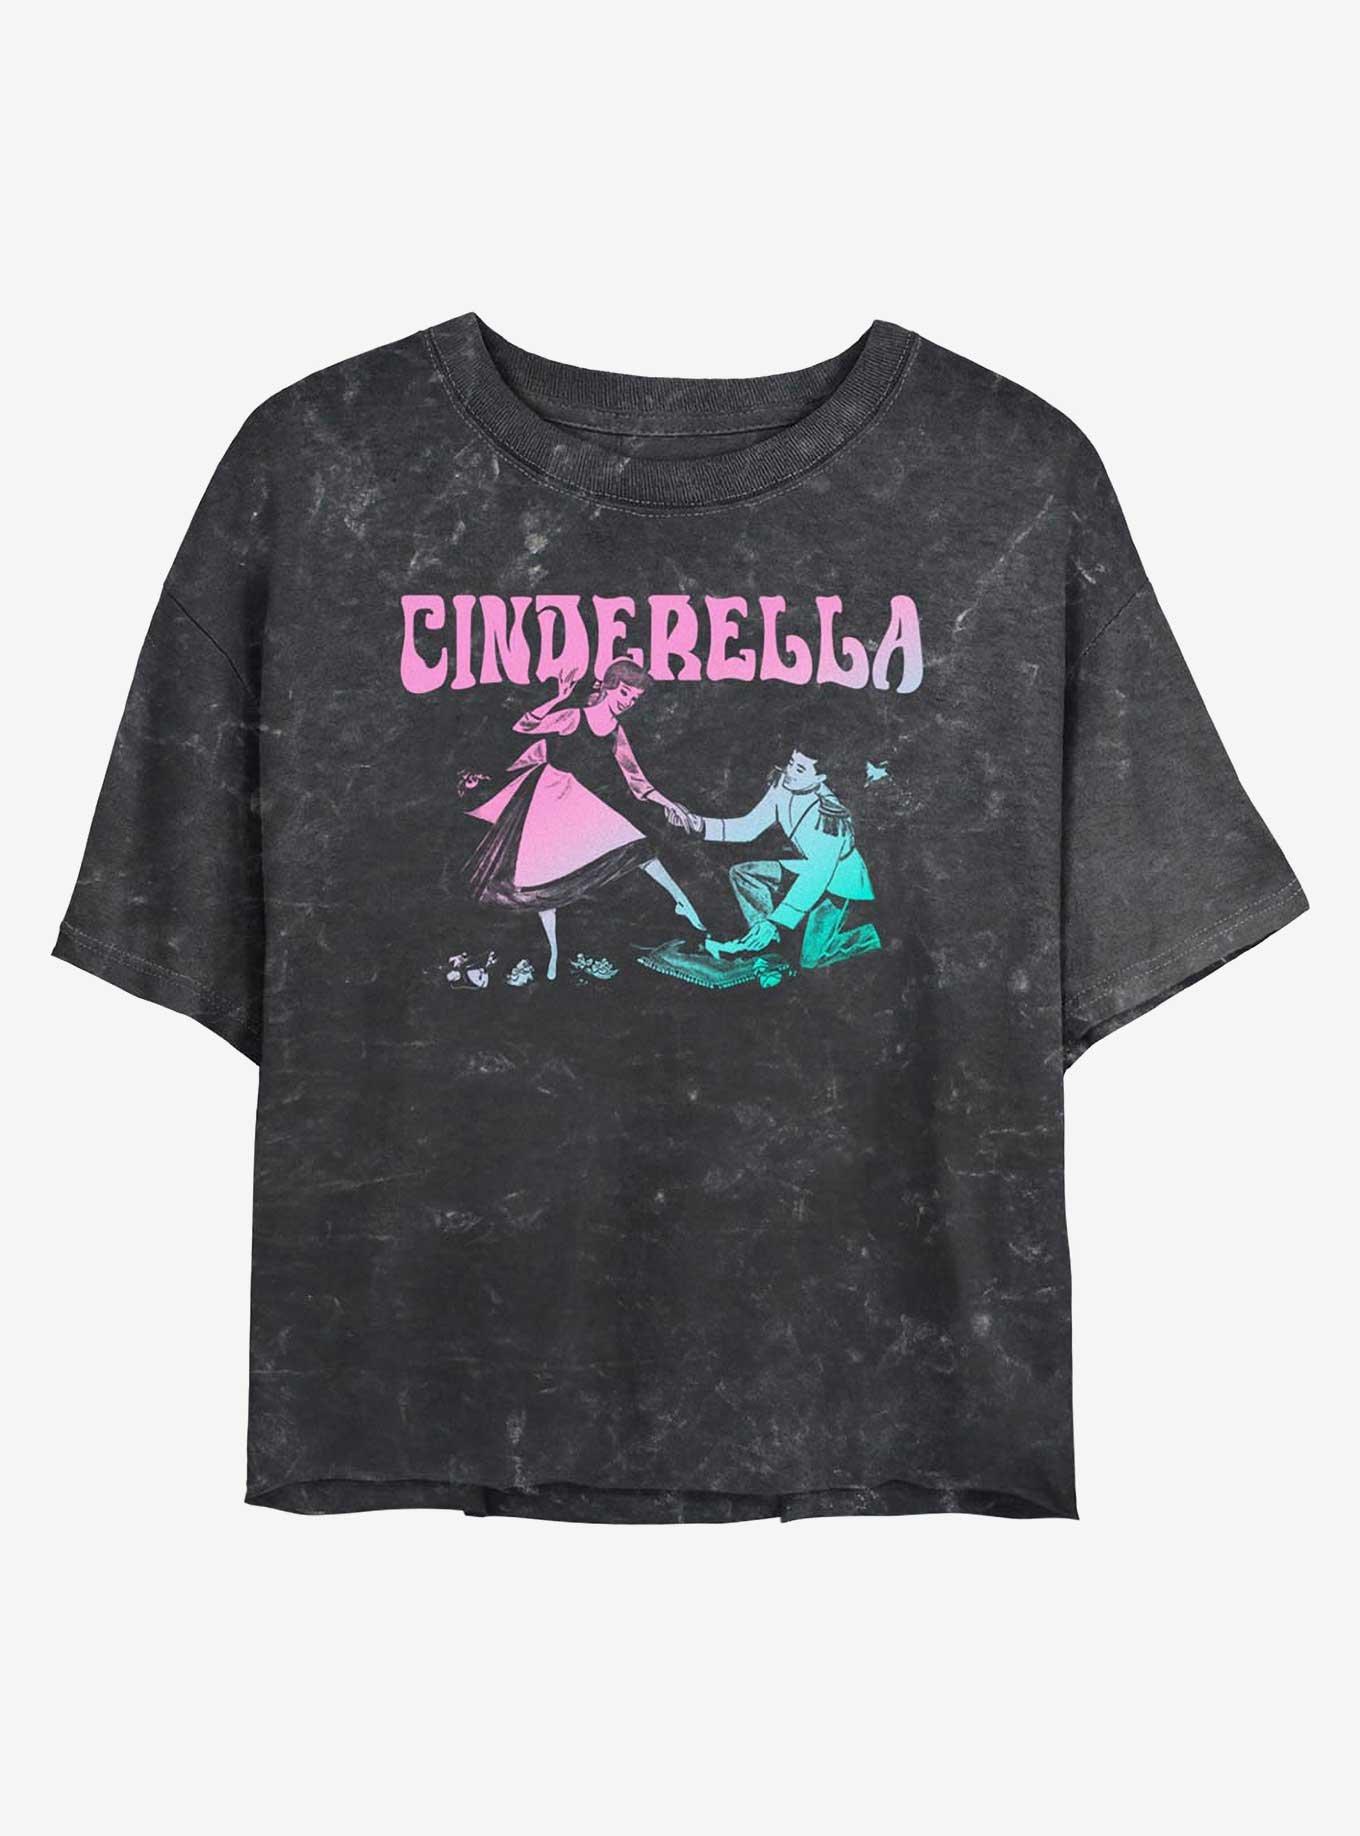 Disney Cinderella The Slipper Fits Mineral Wash Womens Crop T-Shirt, BLACK, hi-res